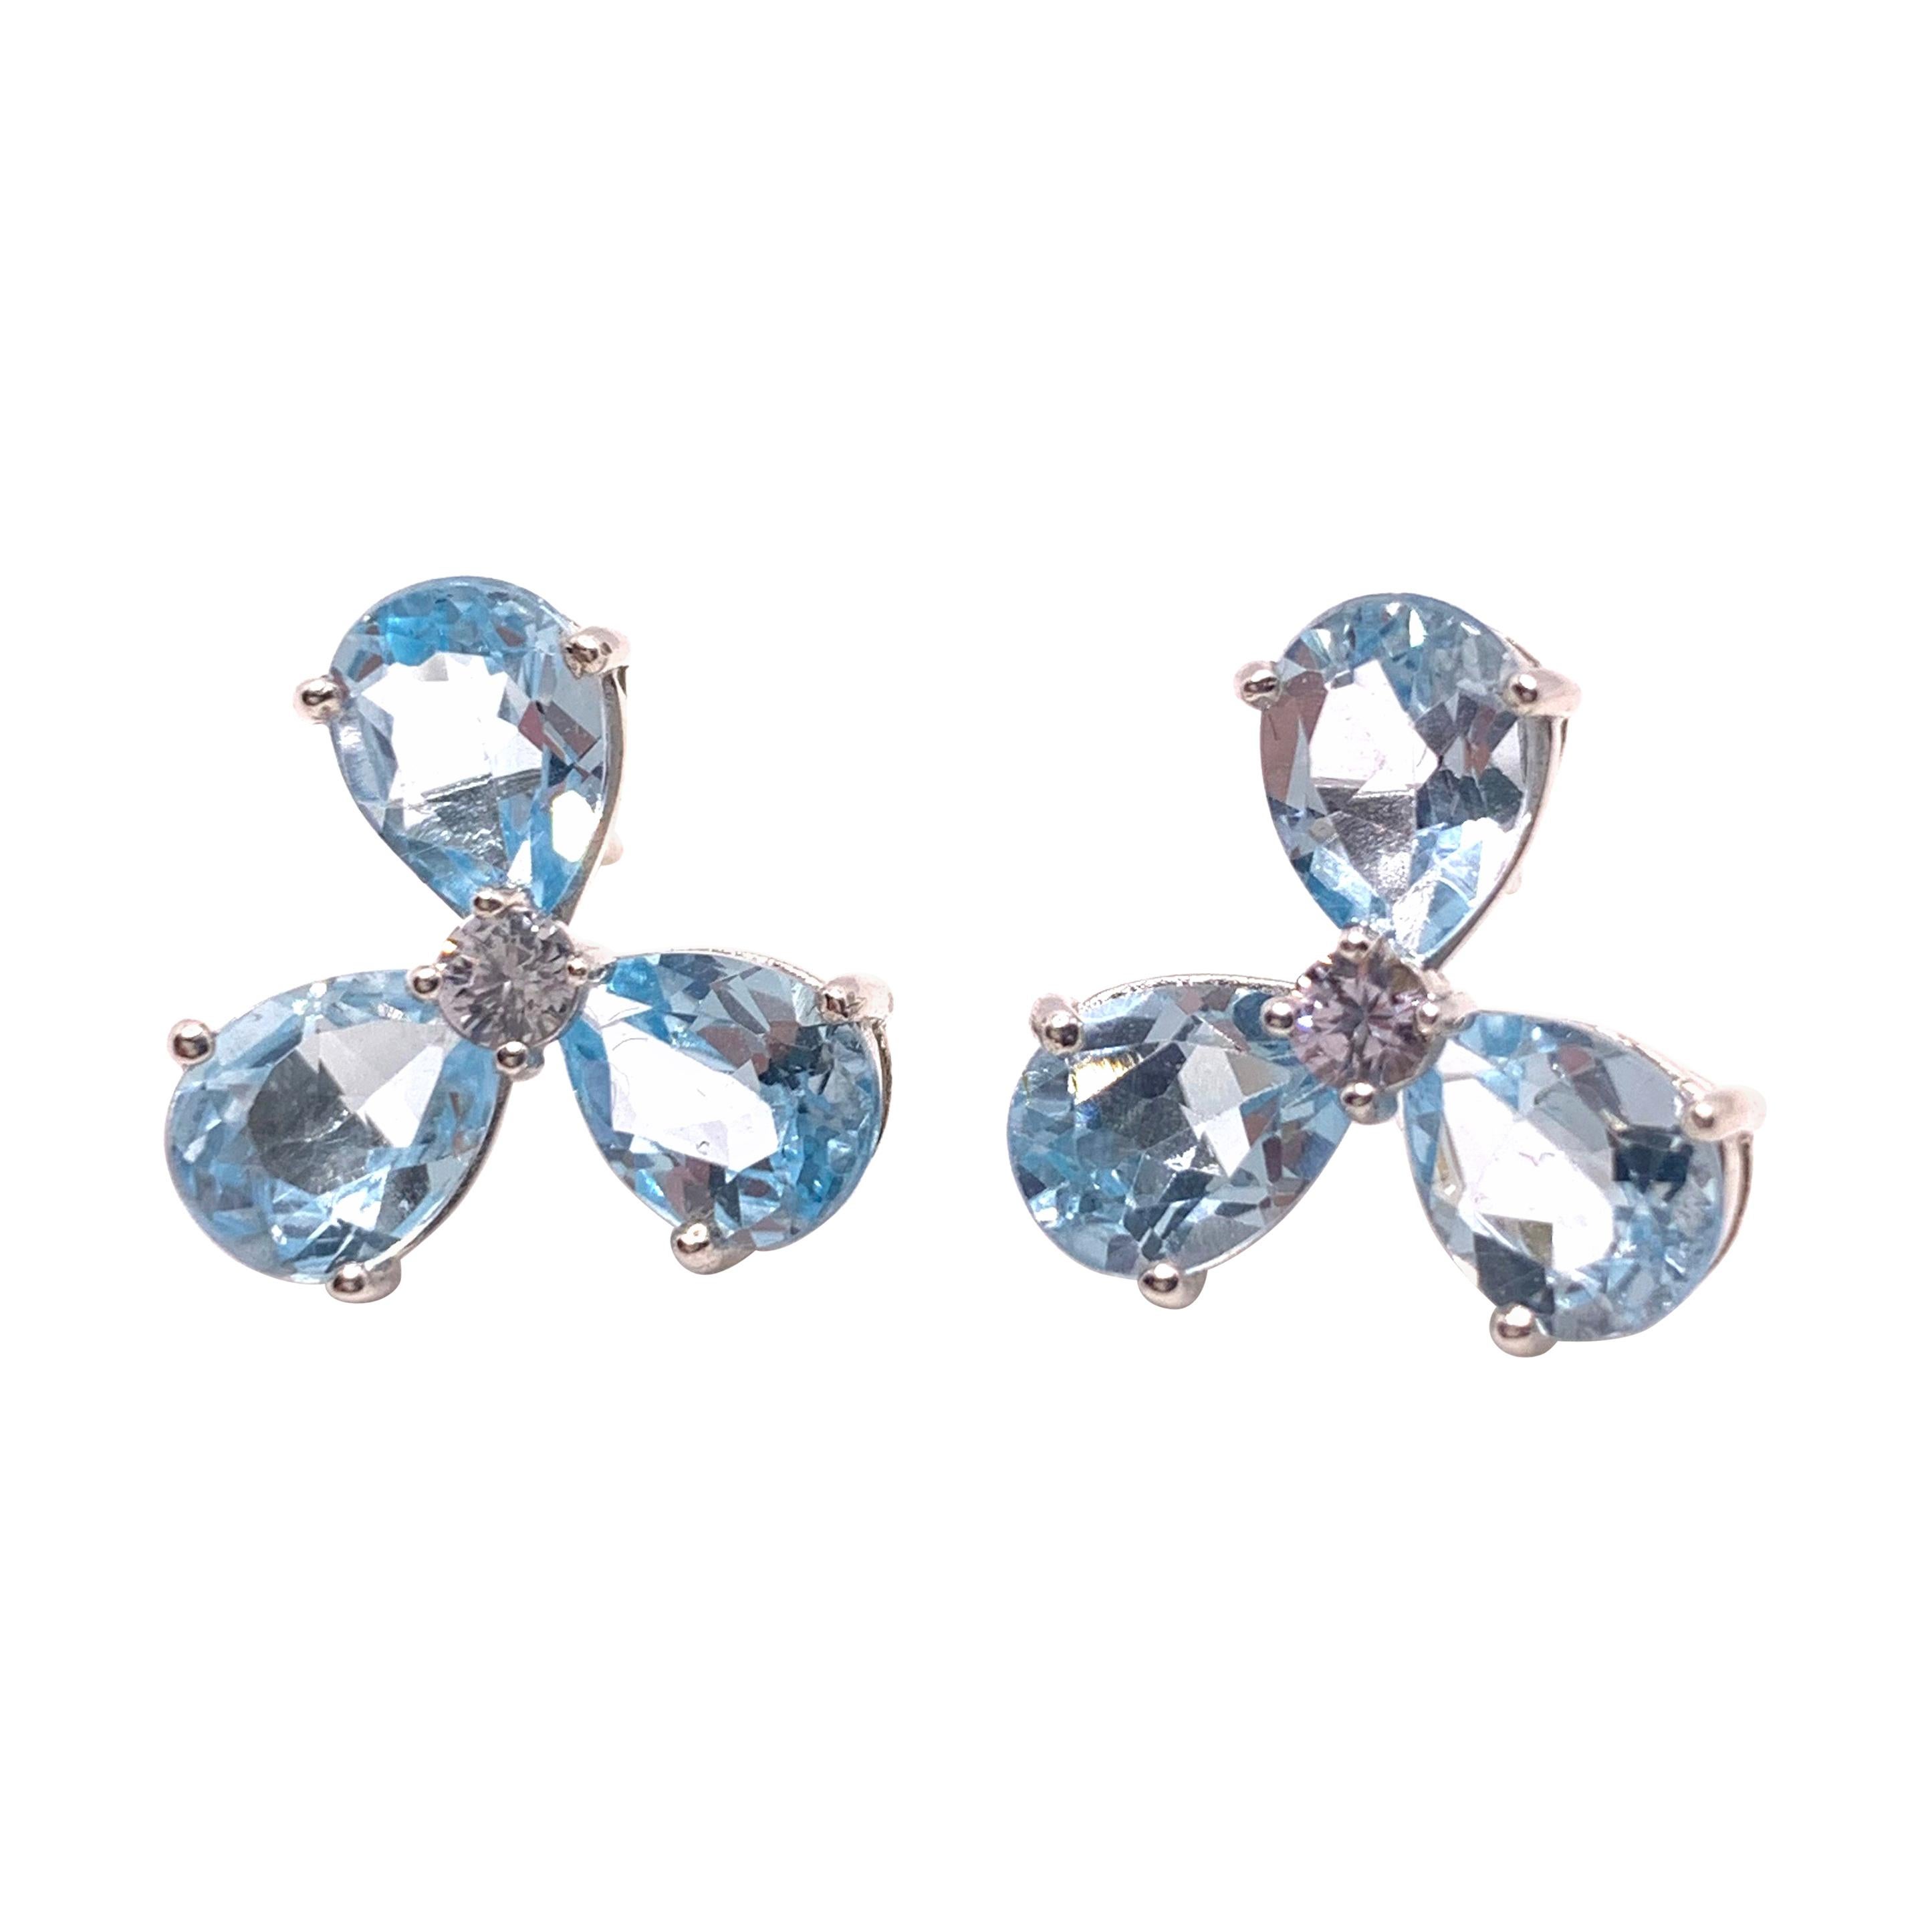 Stunning pair of Three-petal Genuine Blue Topaz Flower Earrings